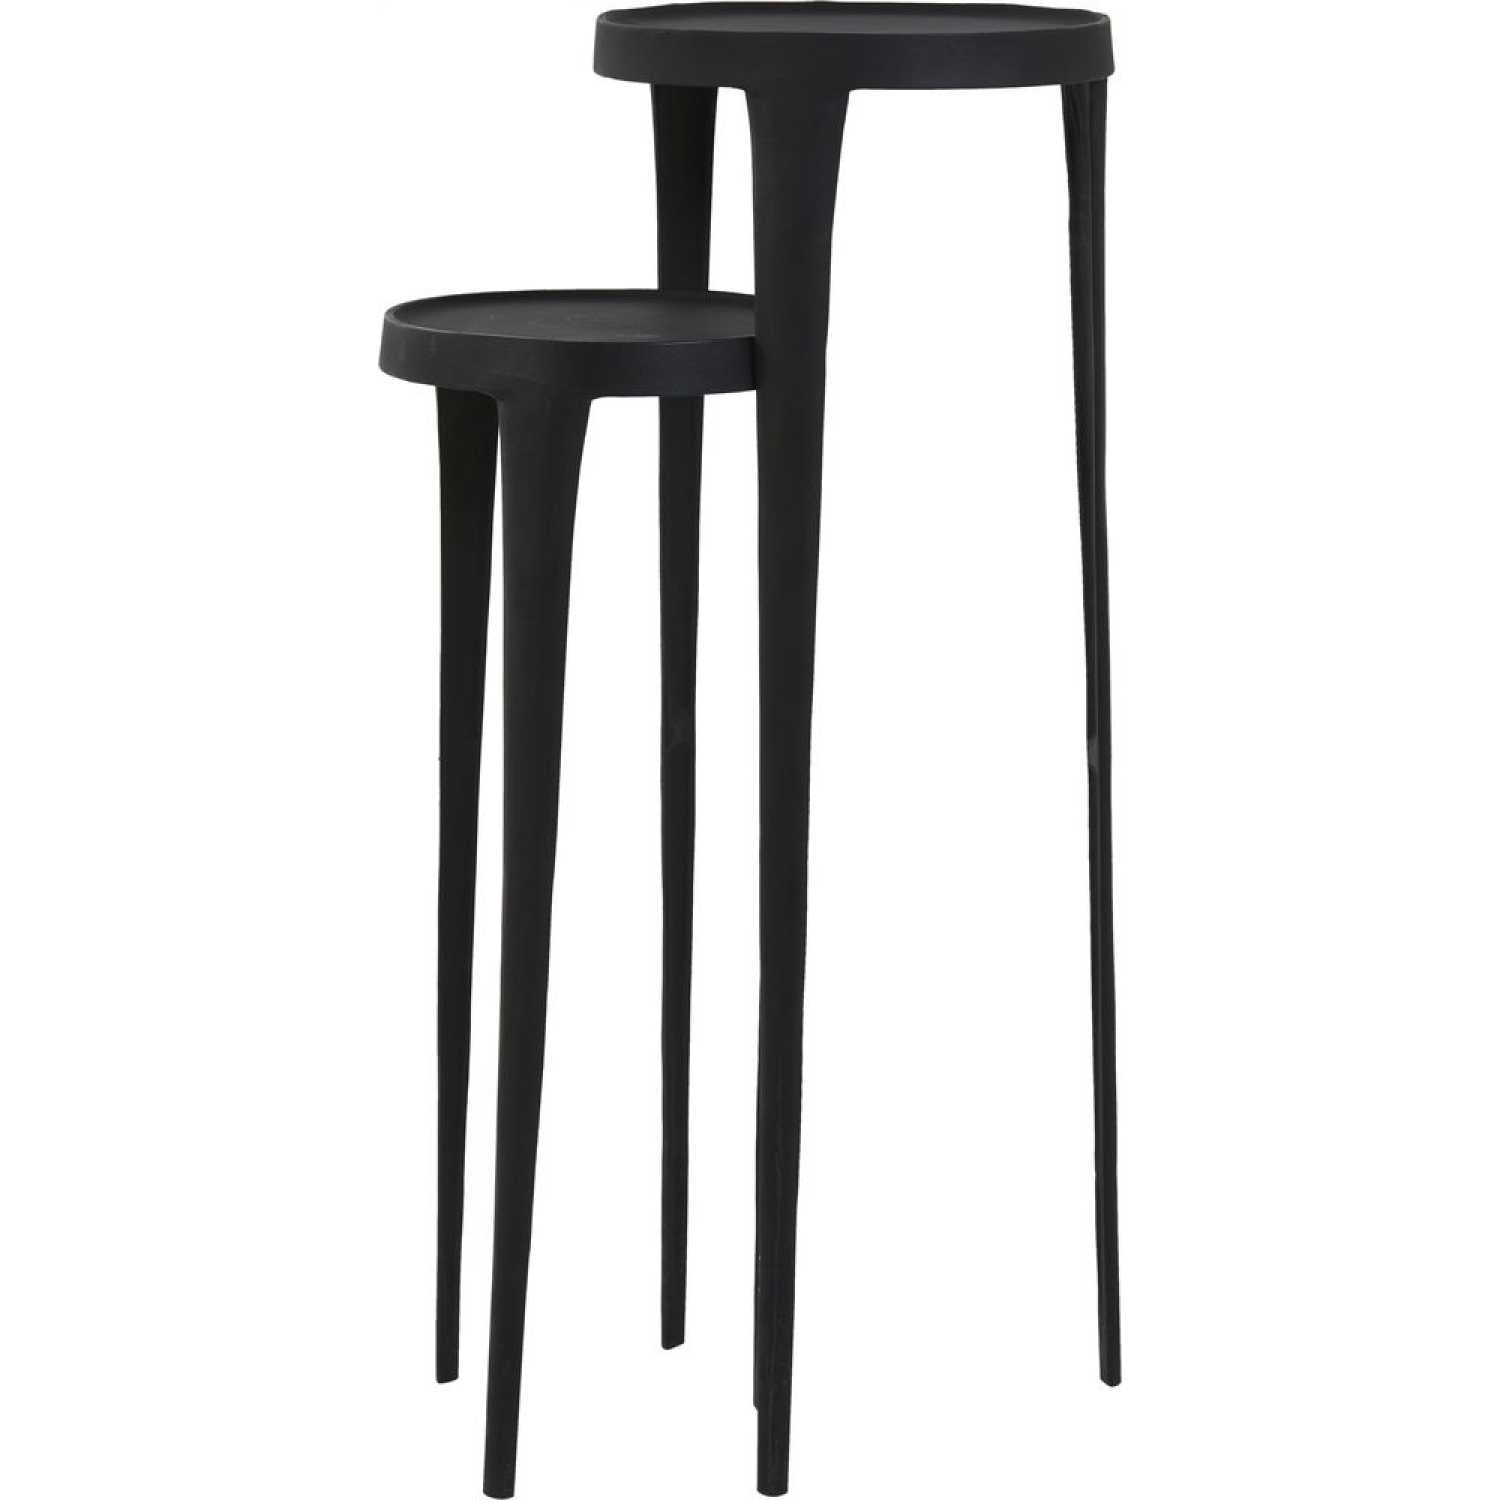 Set of 2 Black Pedestal Side Tables